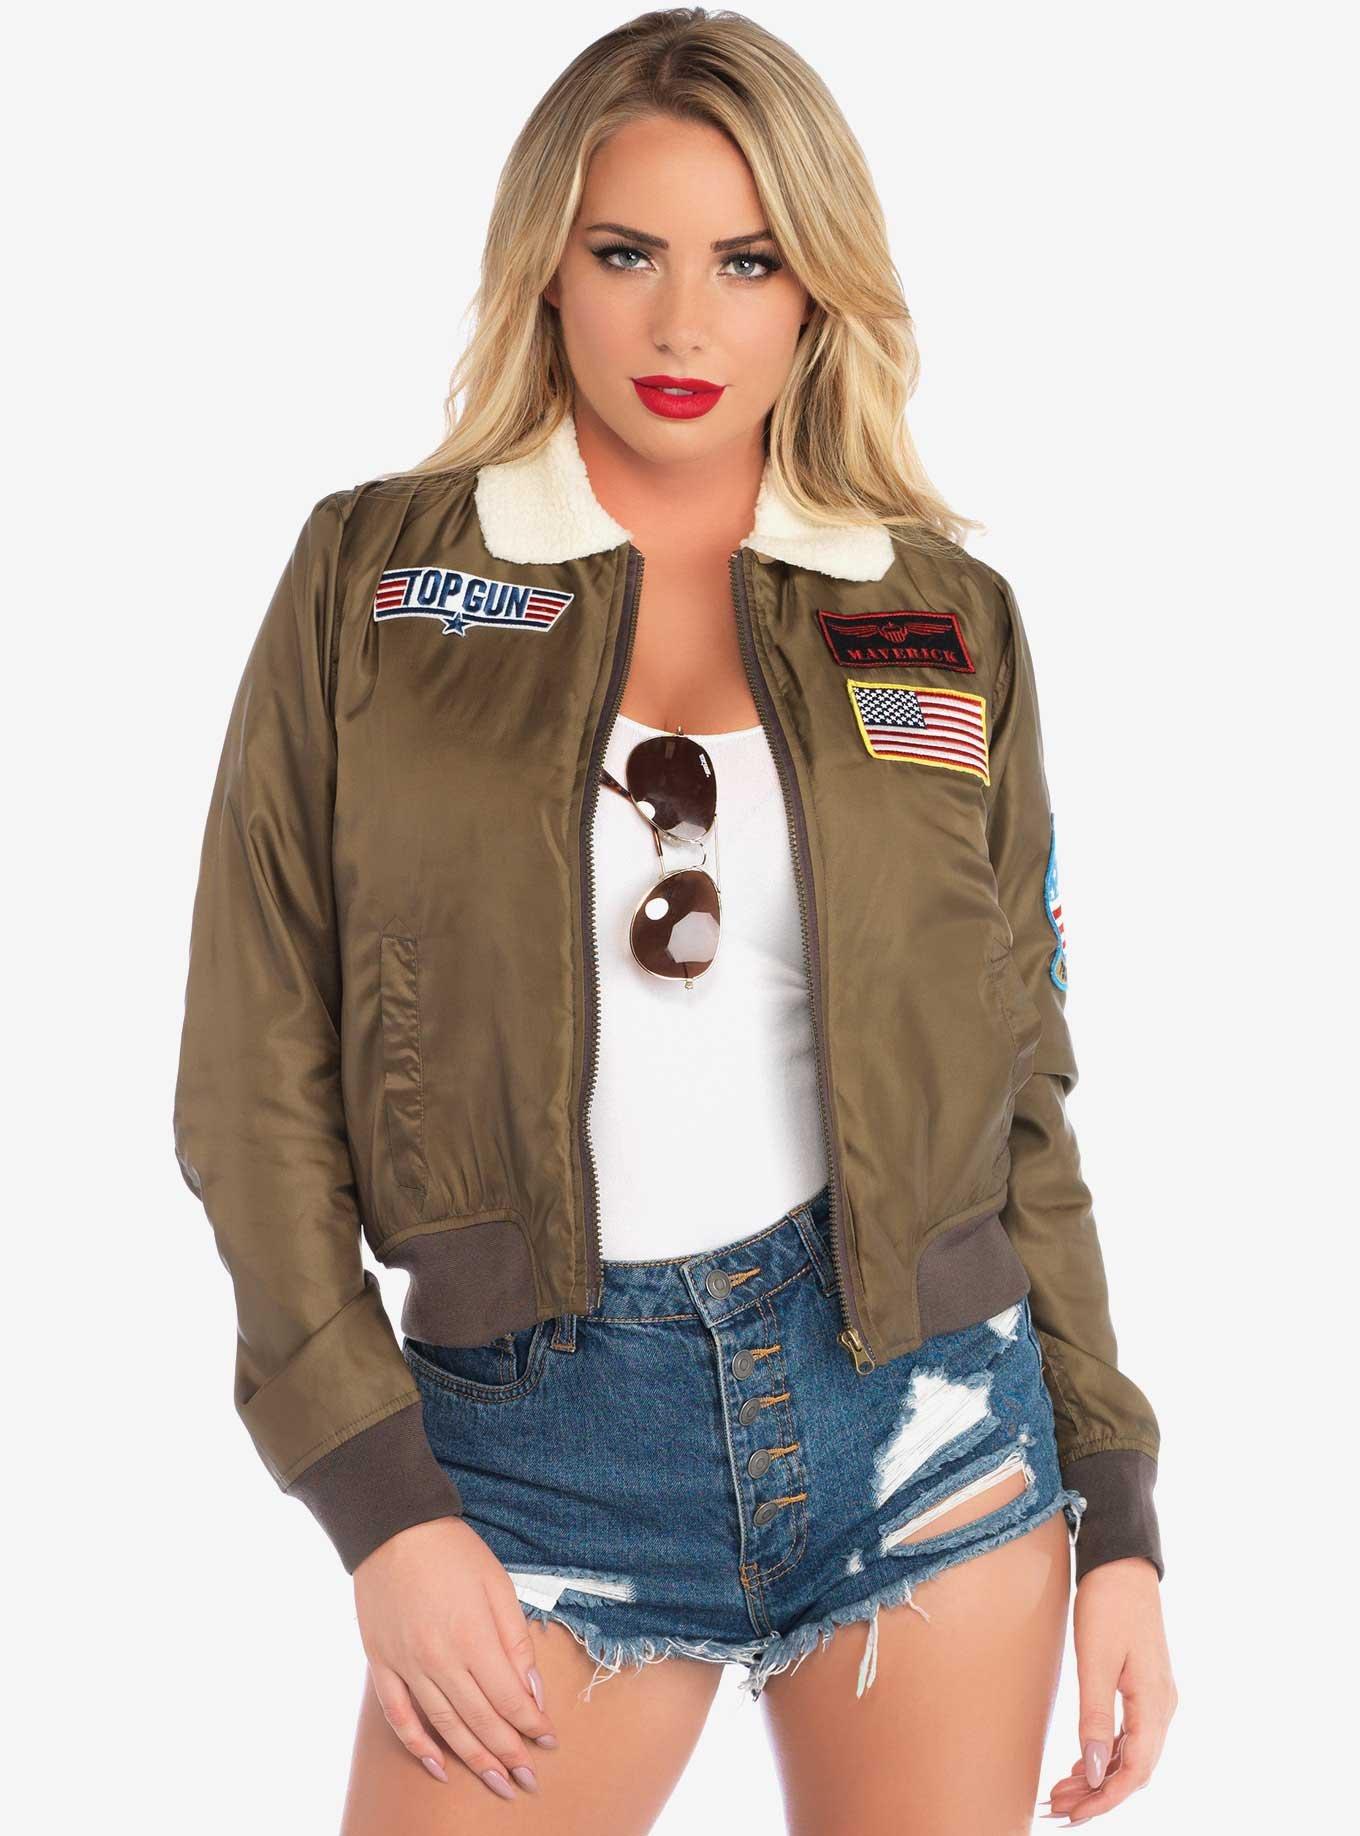 Top Gun Women's Bomber Costume Jacket